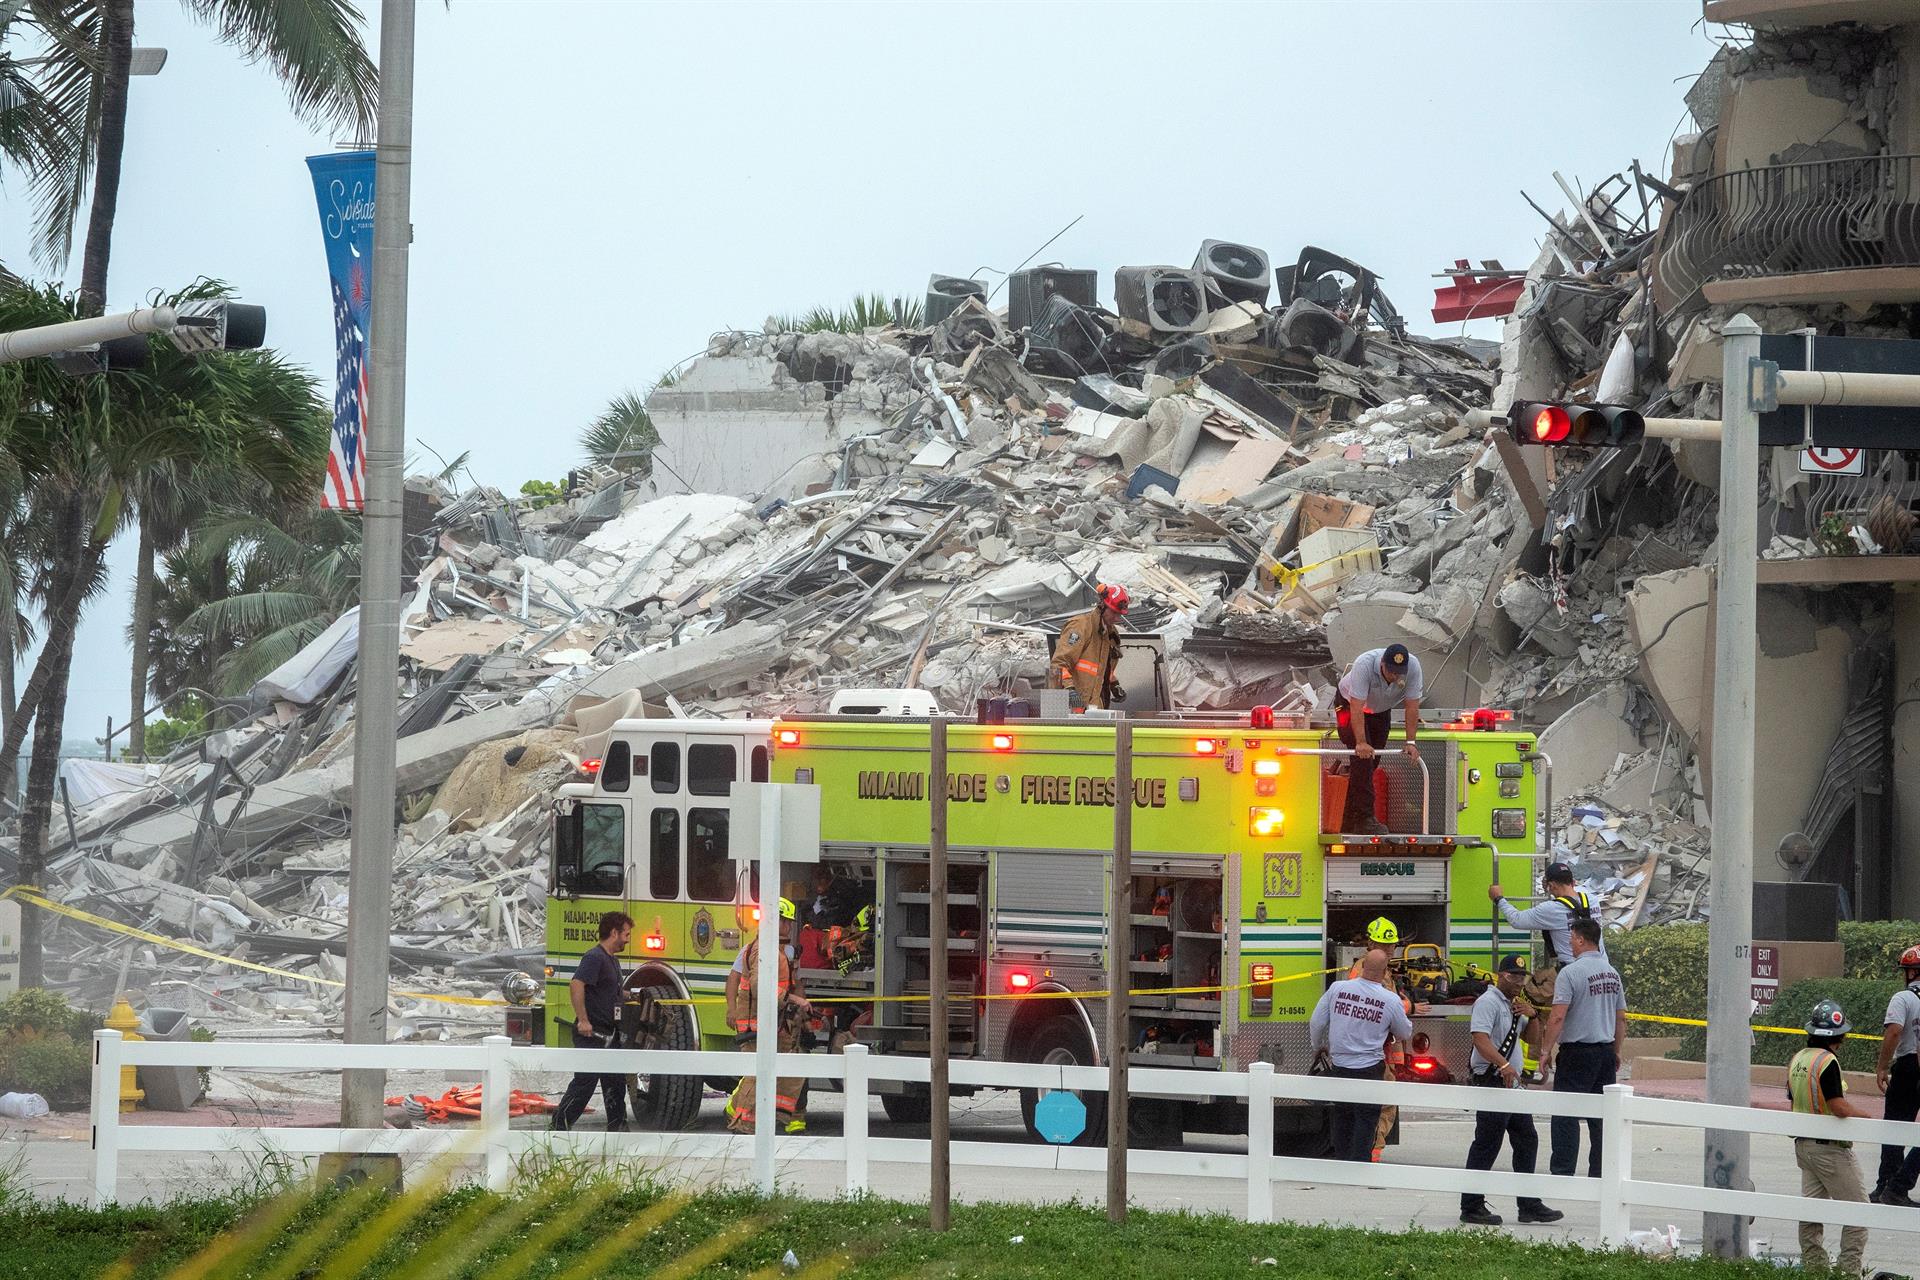 “Un terremoto”, una fuga precipitada y muchas dudas tras derrumbe en Florida